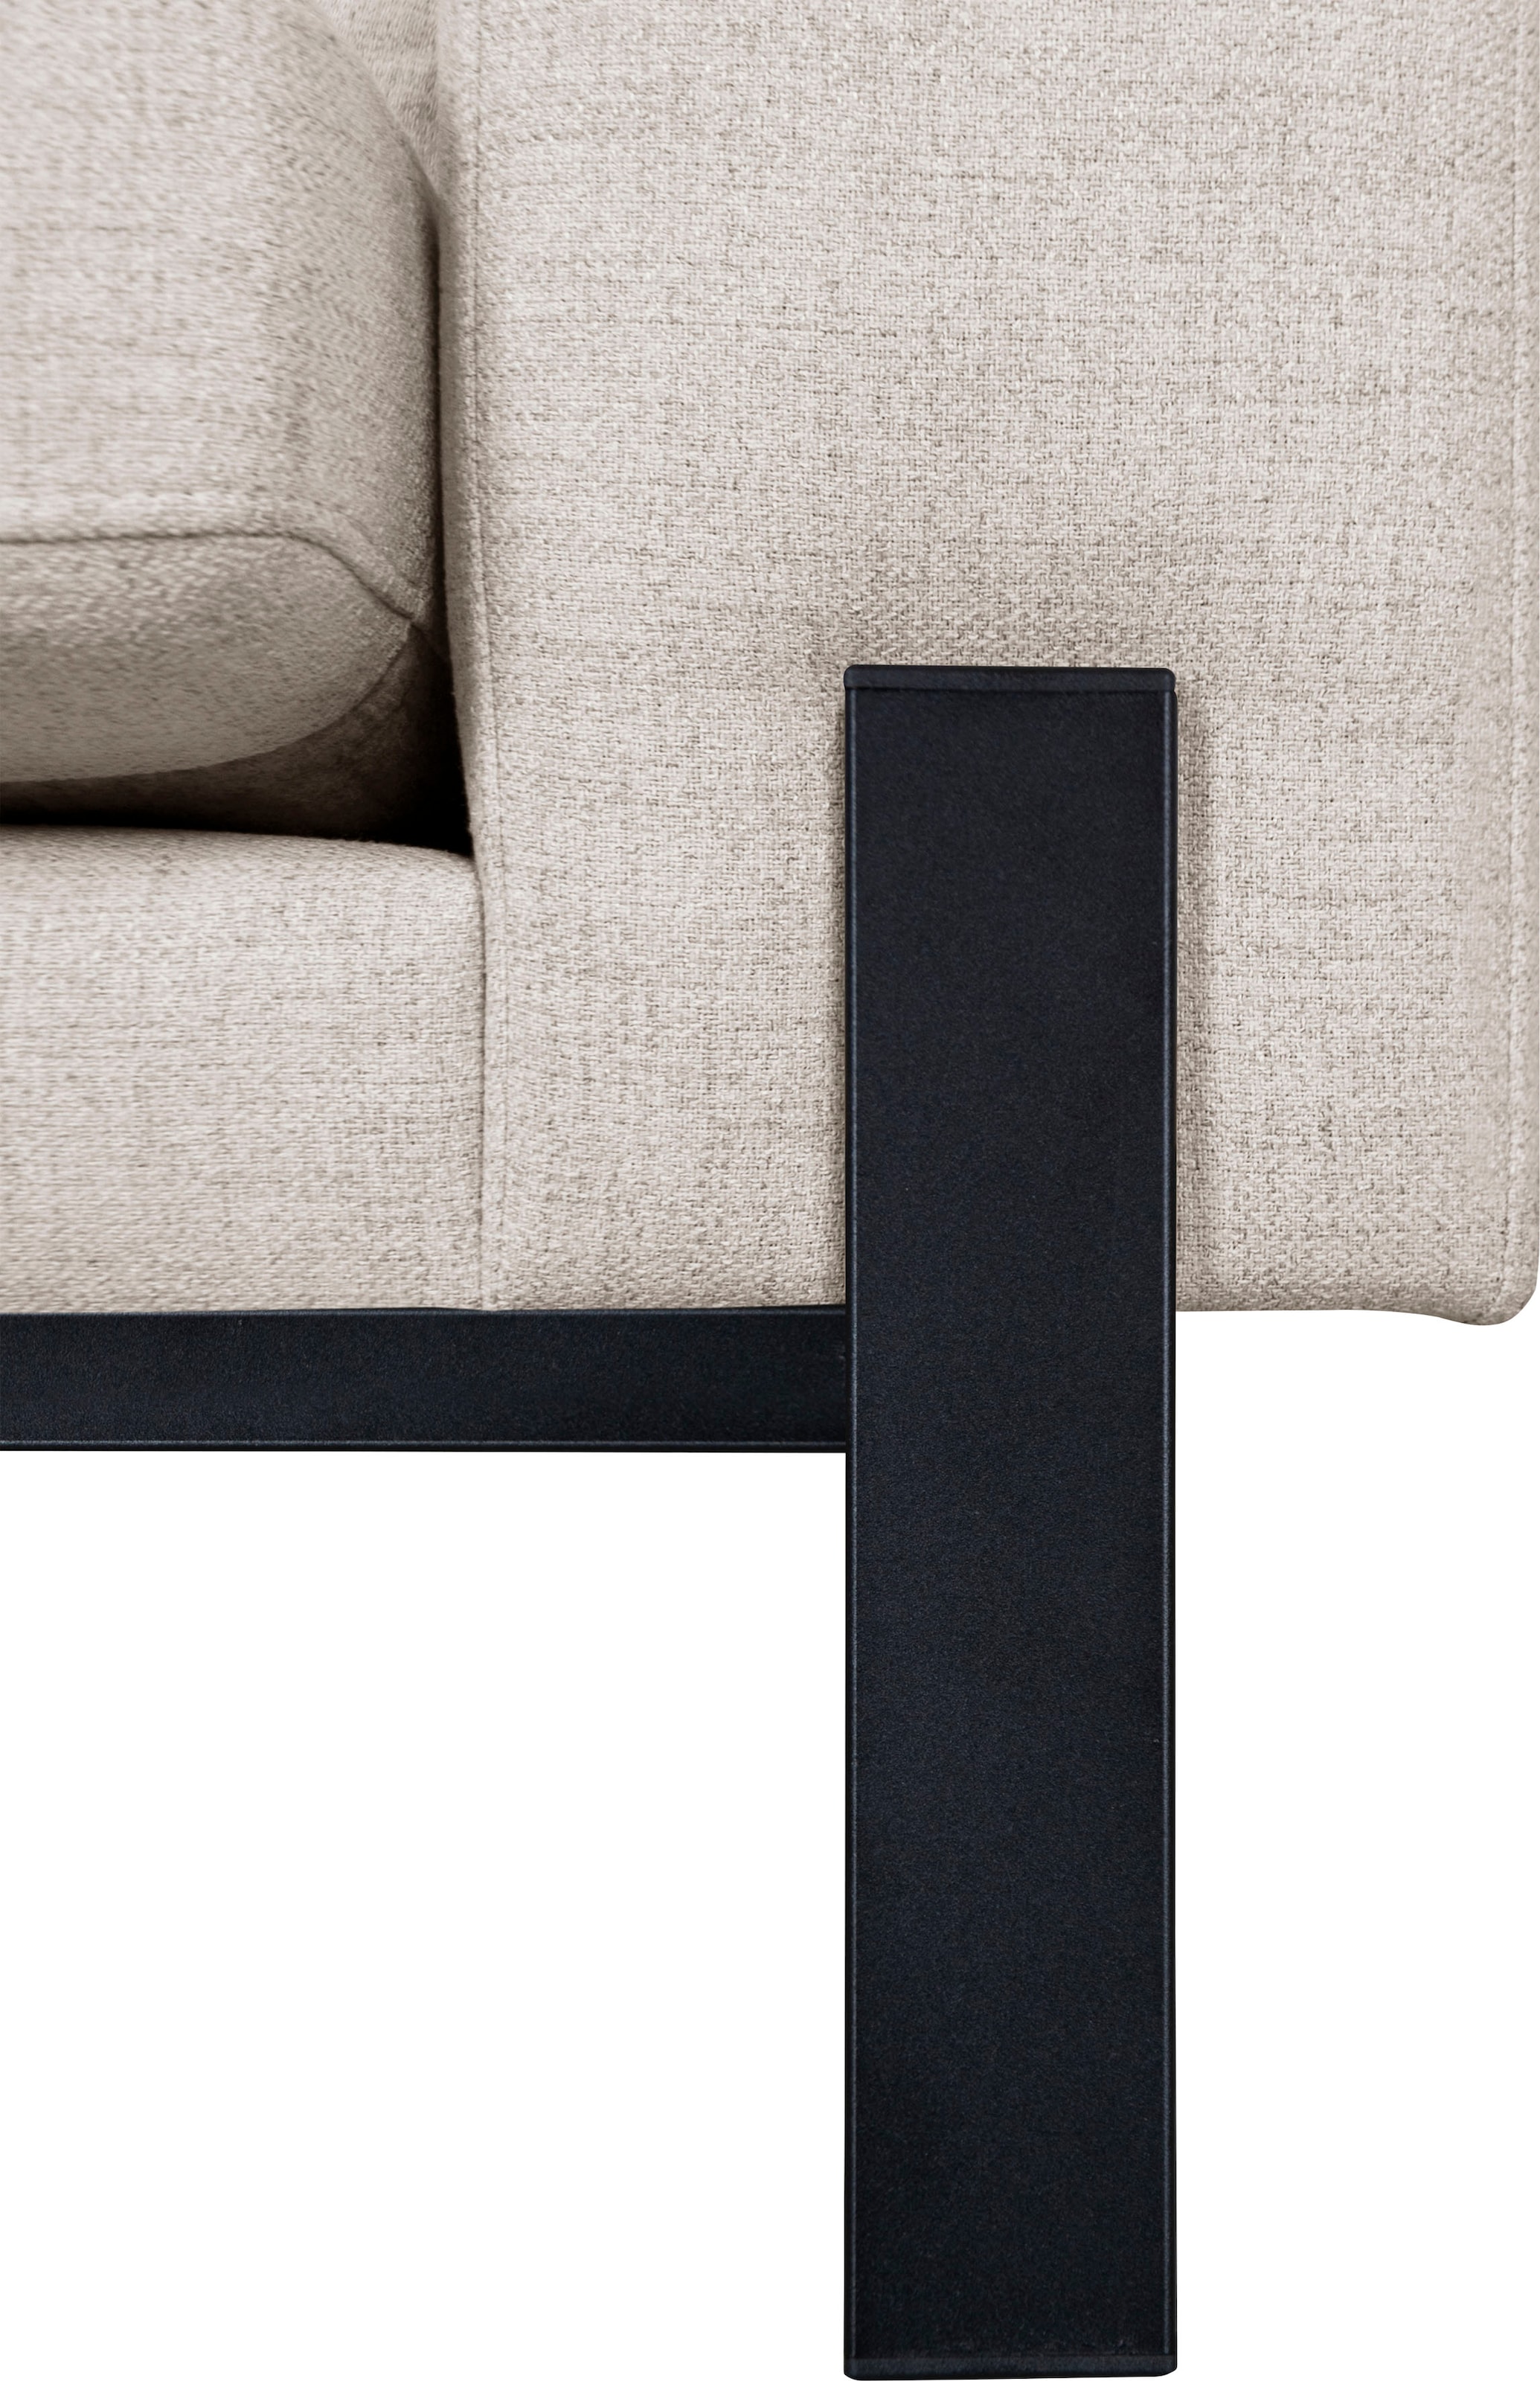 OTTO products Loveseat »Ennis Sessel Metallgestell«, Verschiedene Bezugsqualitäten: Baumwolle, recyceltes Polyester